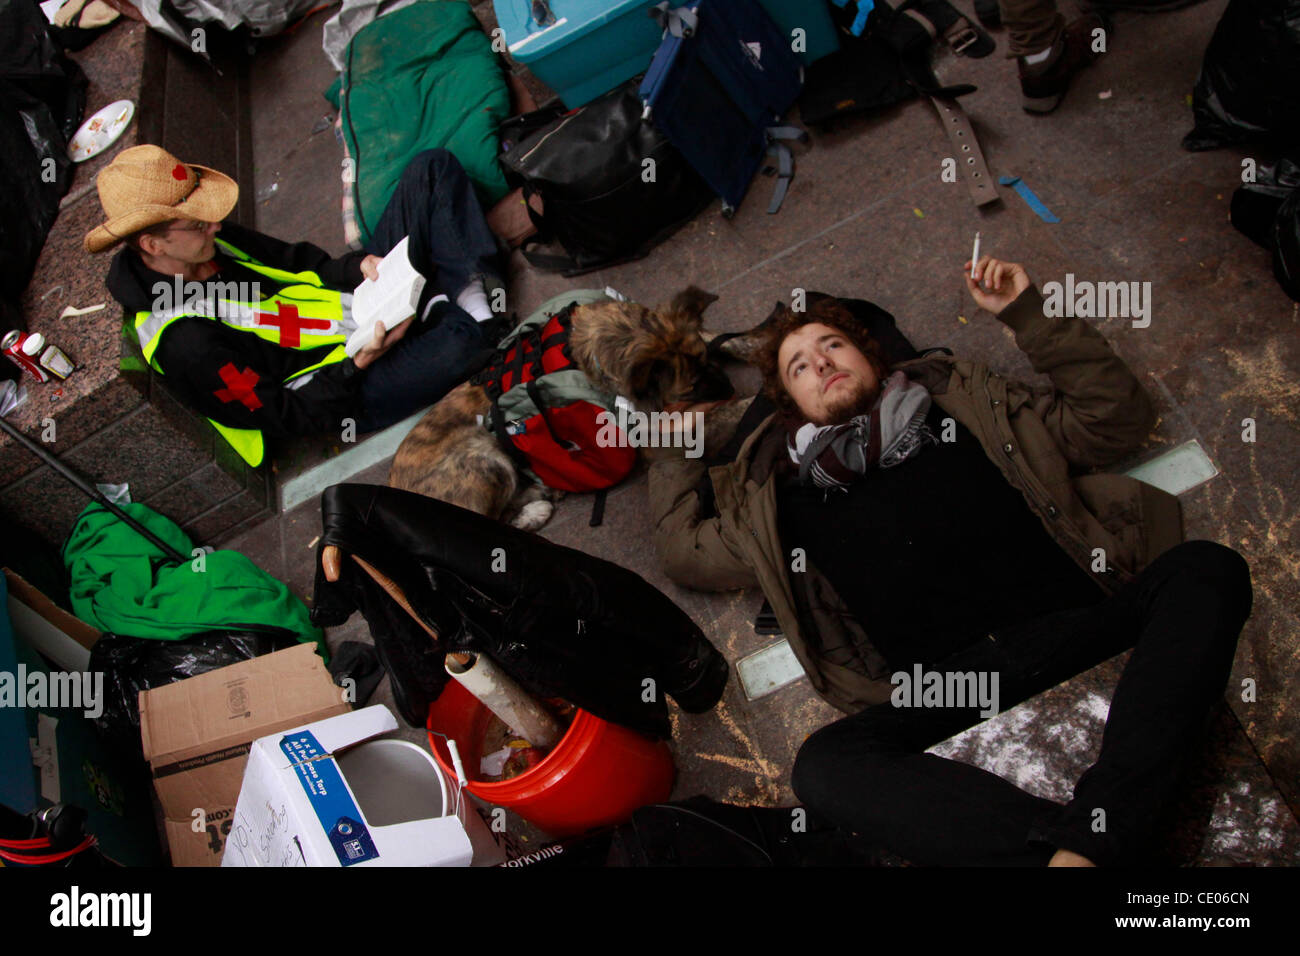 Sanitäter bei der Occupy Wall Street-Demonstration in Zuccotti Park zu protestieren. Manche nennen es ein Elendsviertel und einen Zirkus. Andere nennen es eine politische und soziale Revolution. Stockfoto